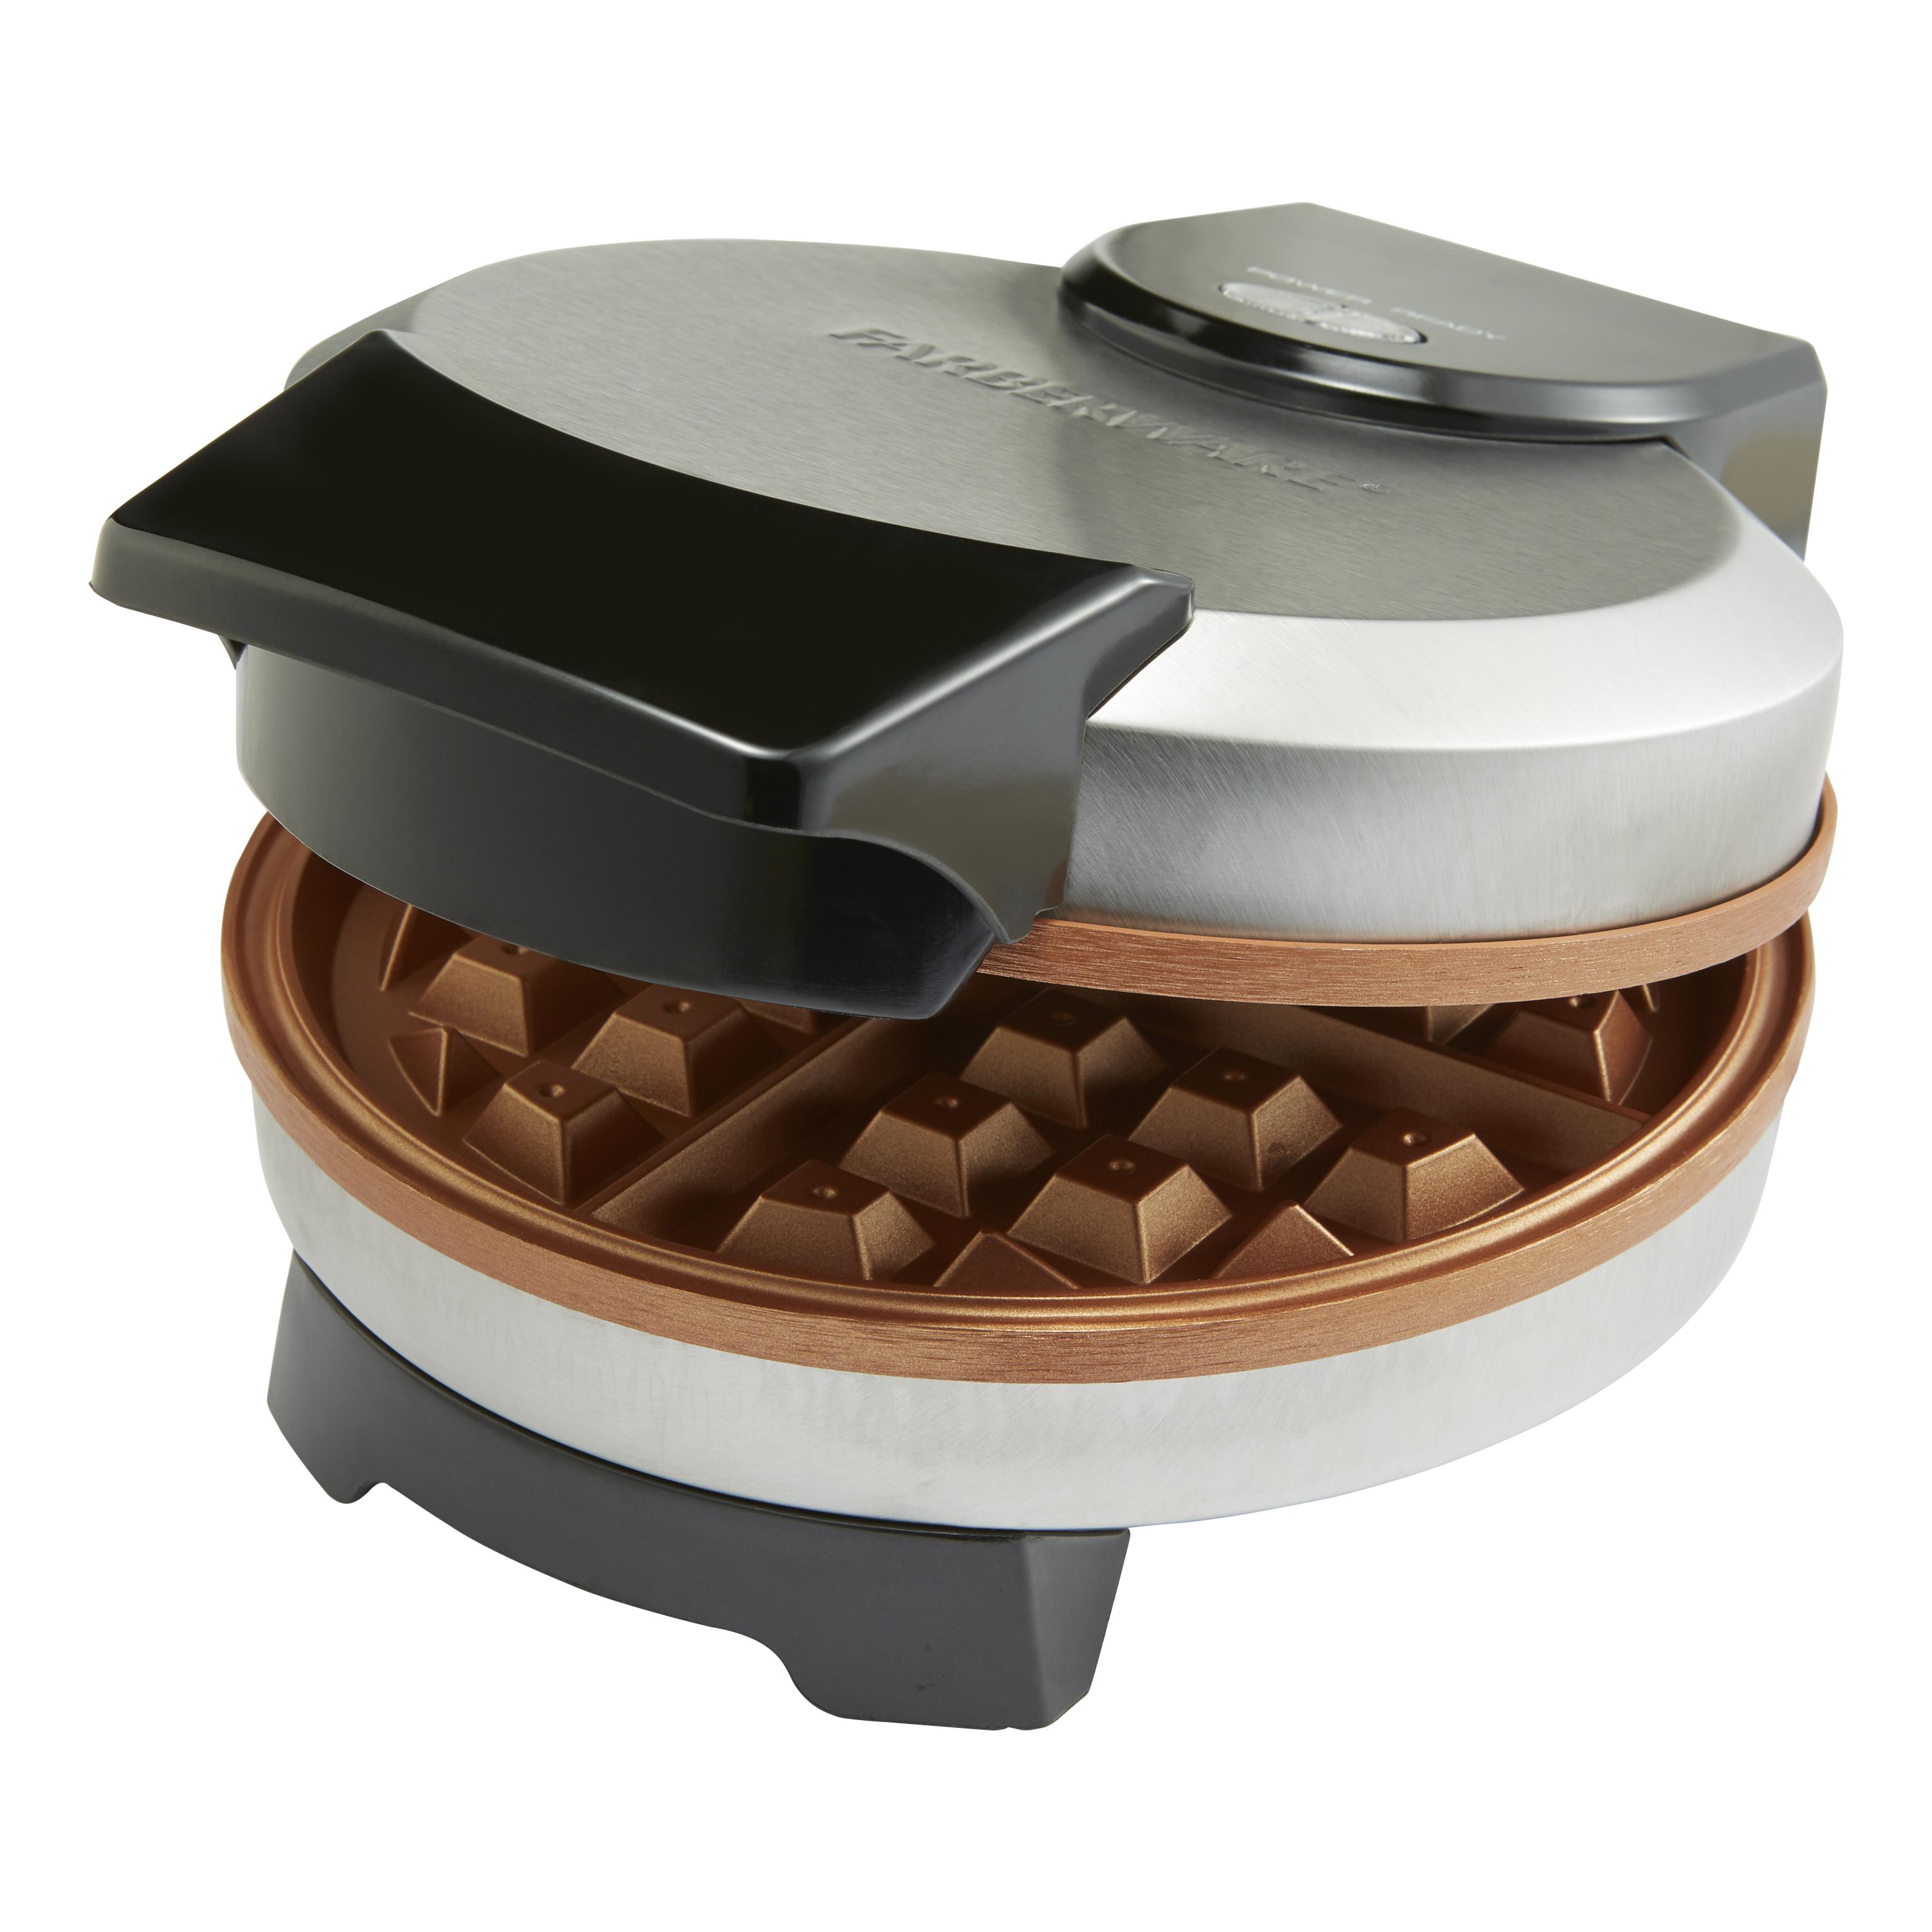 Farberware Copper Non-Stick Round Waffle Maker, New - 201796 - image 2 of 5